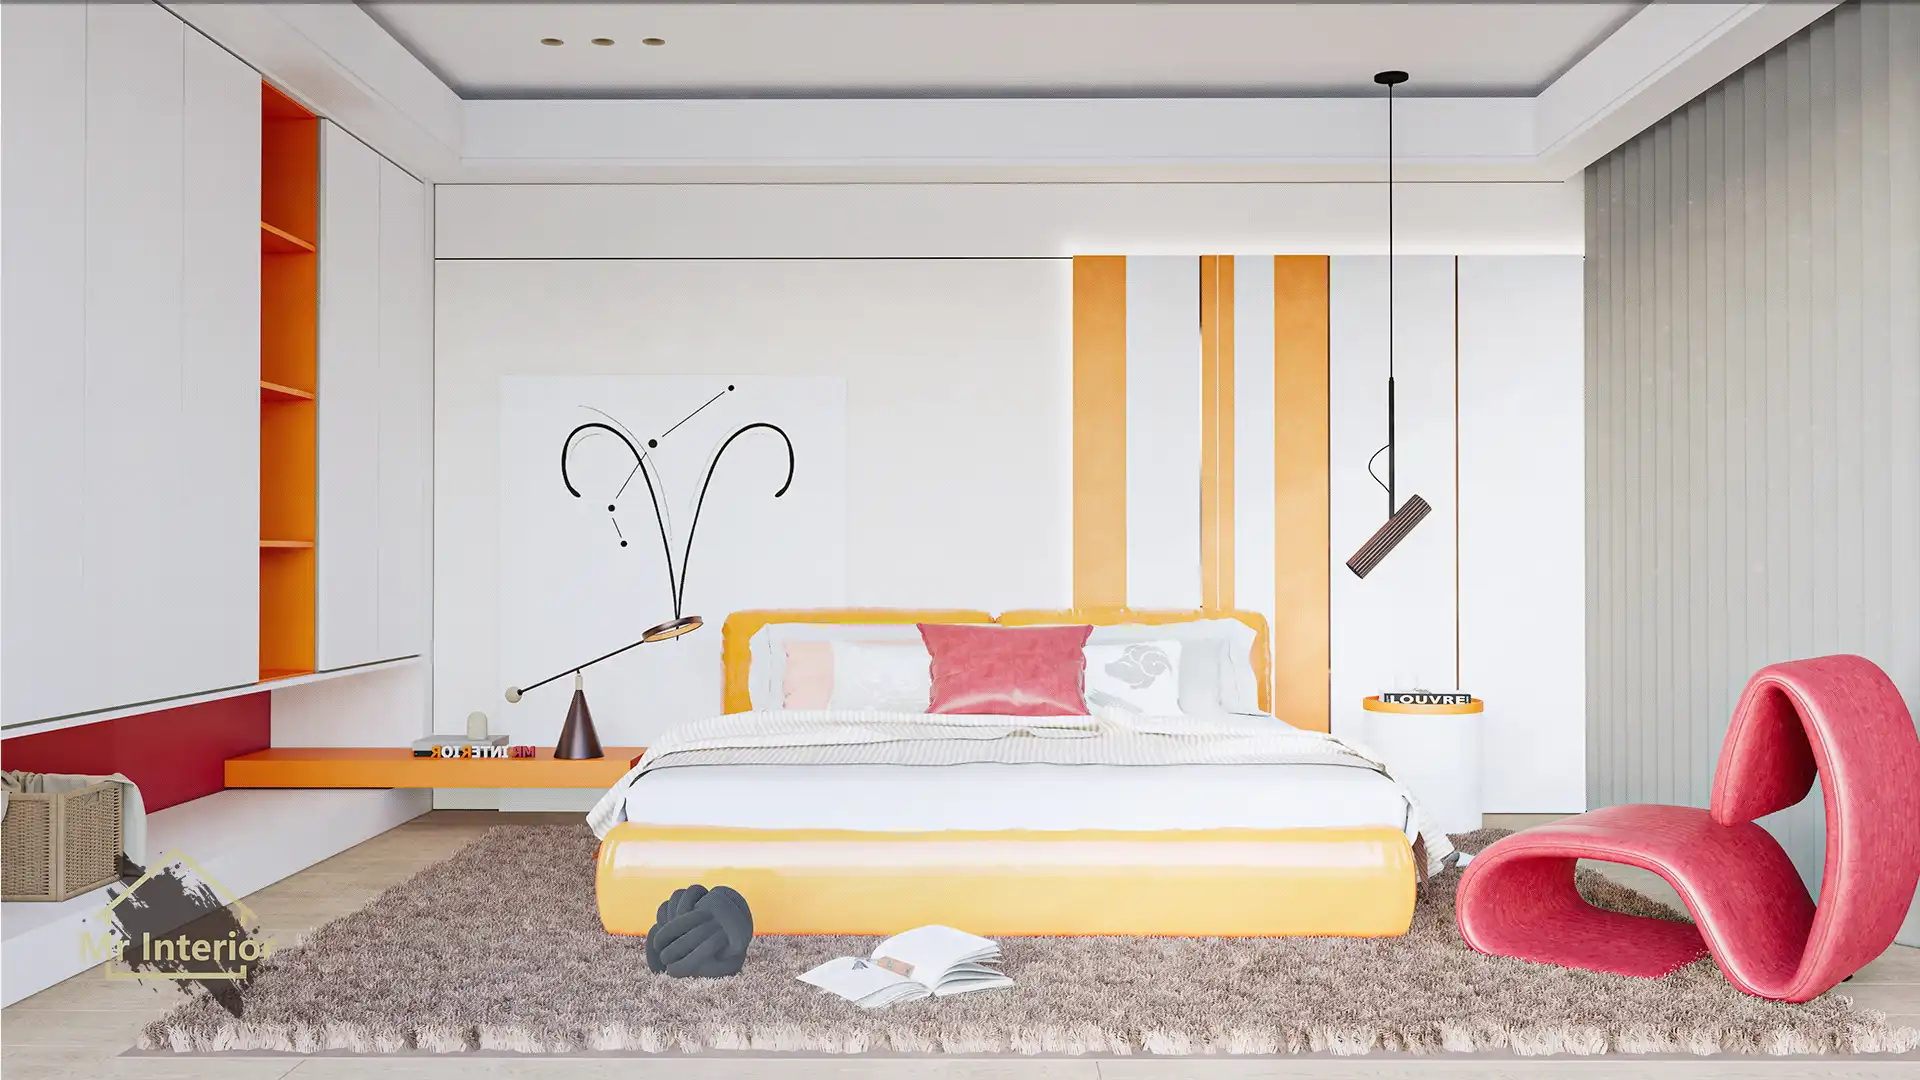 這是白羊座的睡房。設計風格探用了現代風；色調明亮，米色主調，紅色及橙色點綴；圖片中句含了橙色軟墊雙人床，白色掩門大衣櫃，橙色開方式晝架，白色及橙色特色牆身，紅色懶人梳化，白羊座裝飾及自然光等。Mr Interior室內設計裝修及傢俬風格。